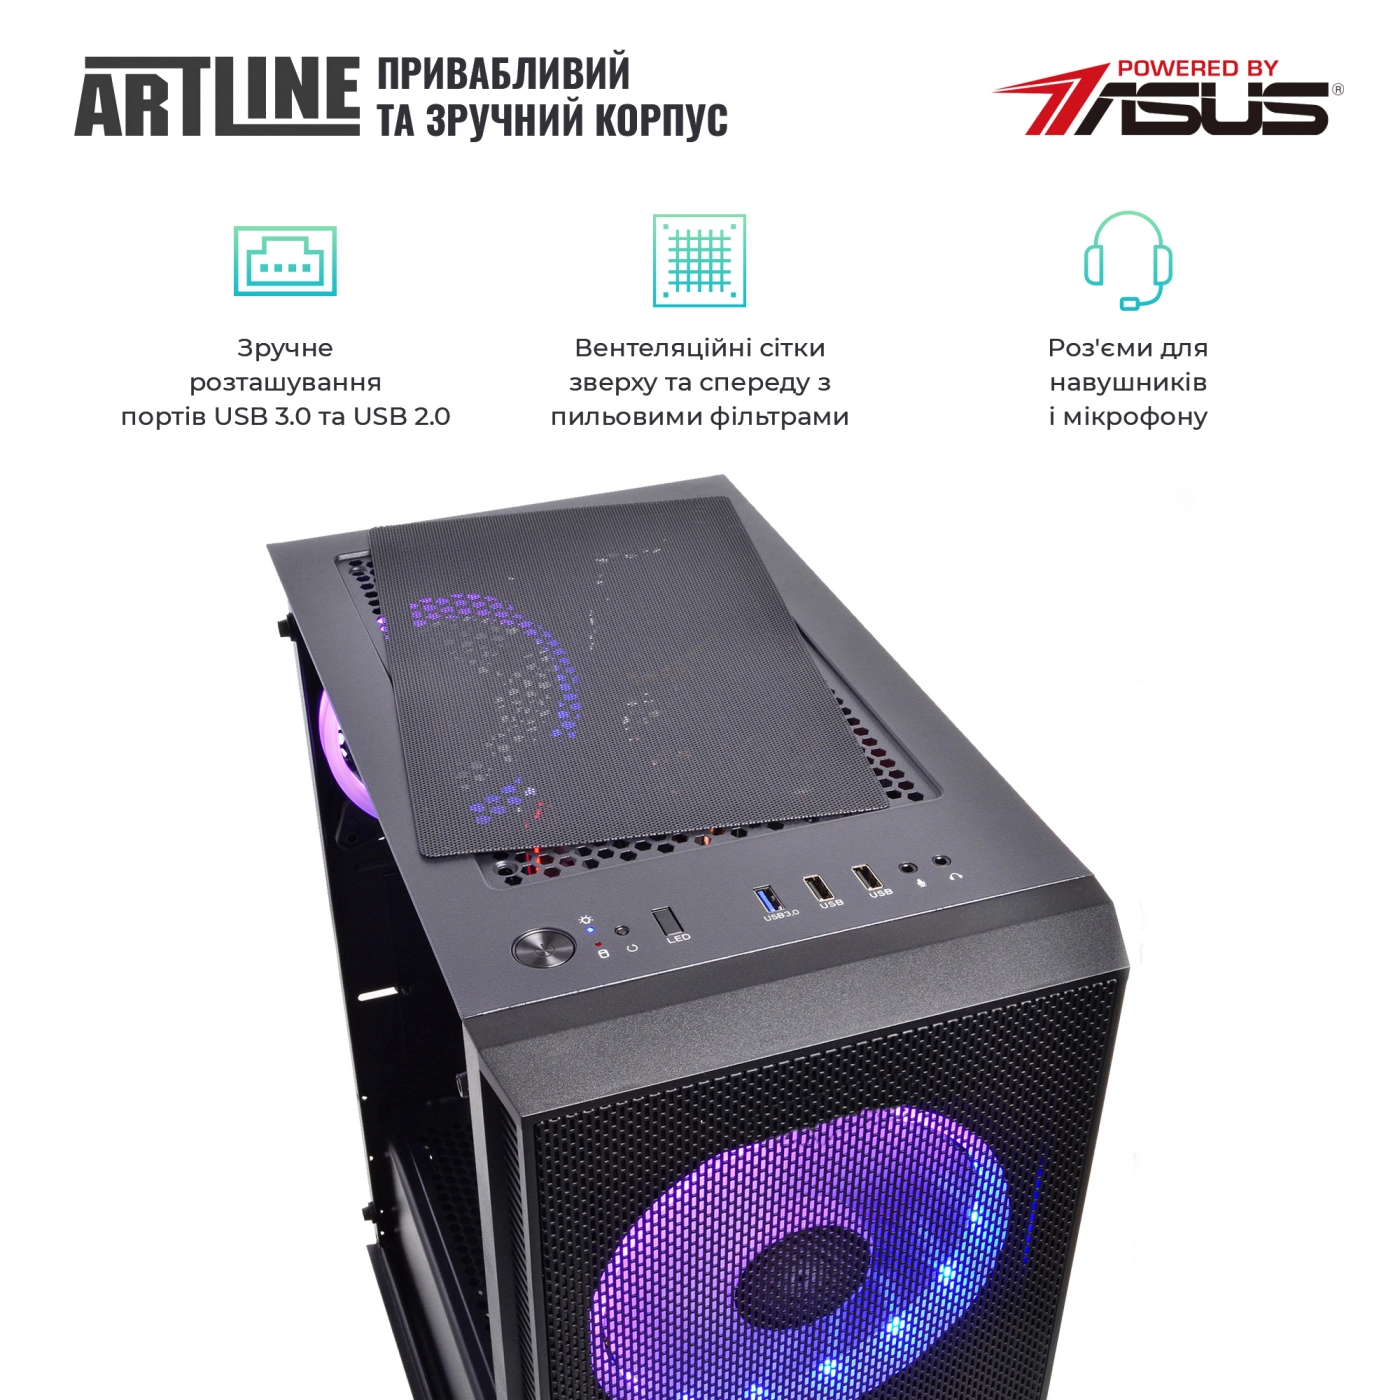 Купить Компьютер ARTLINE Gaming X55v25 - фото 4